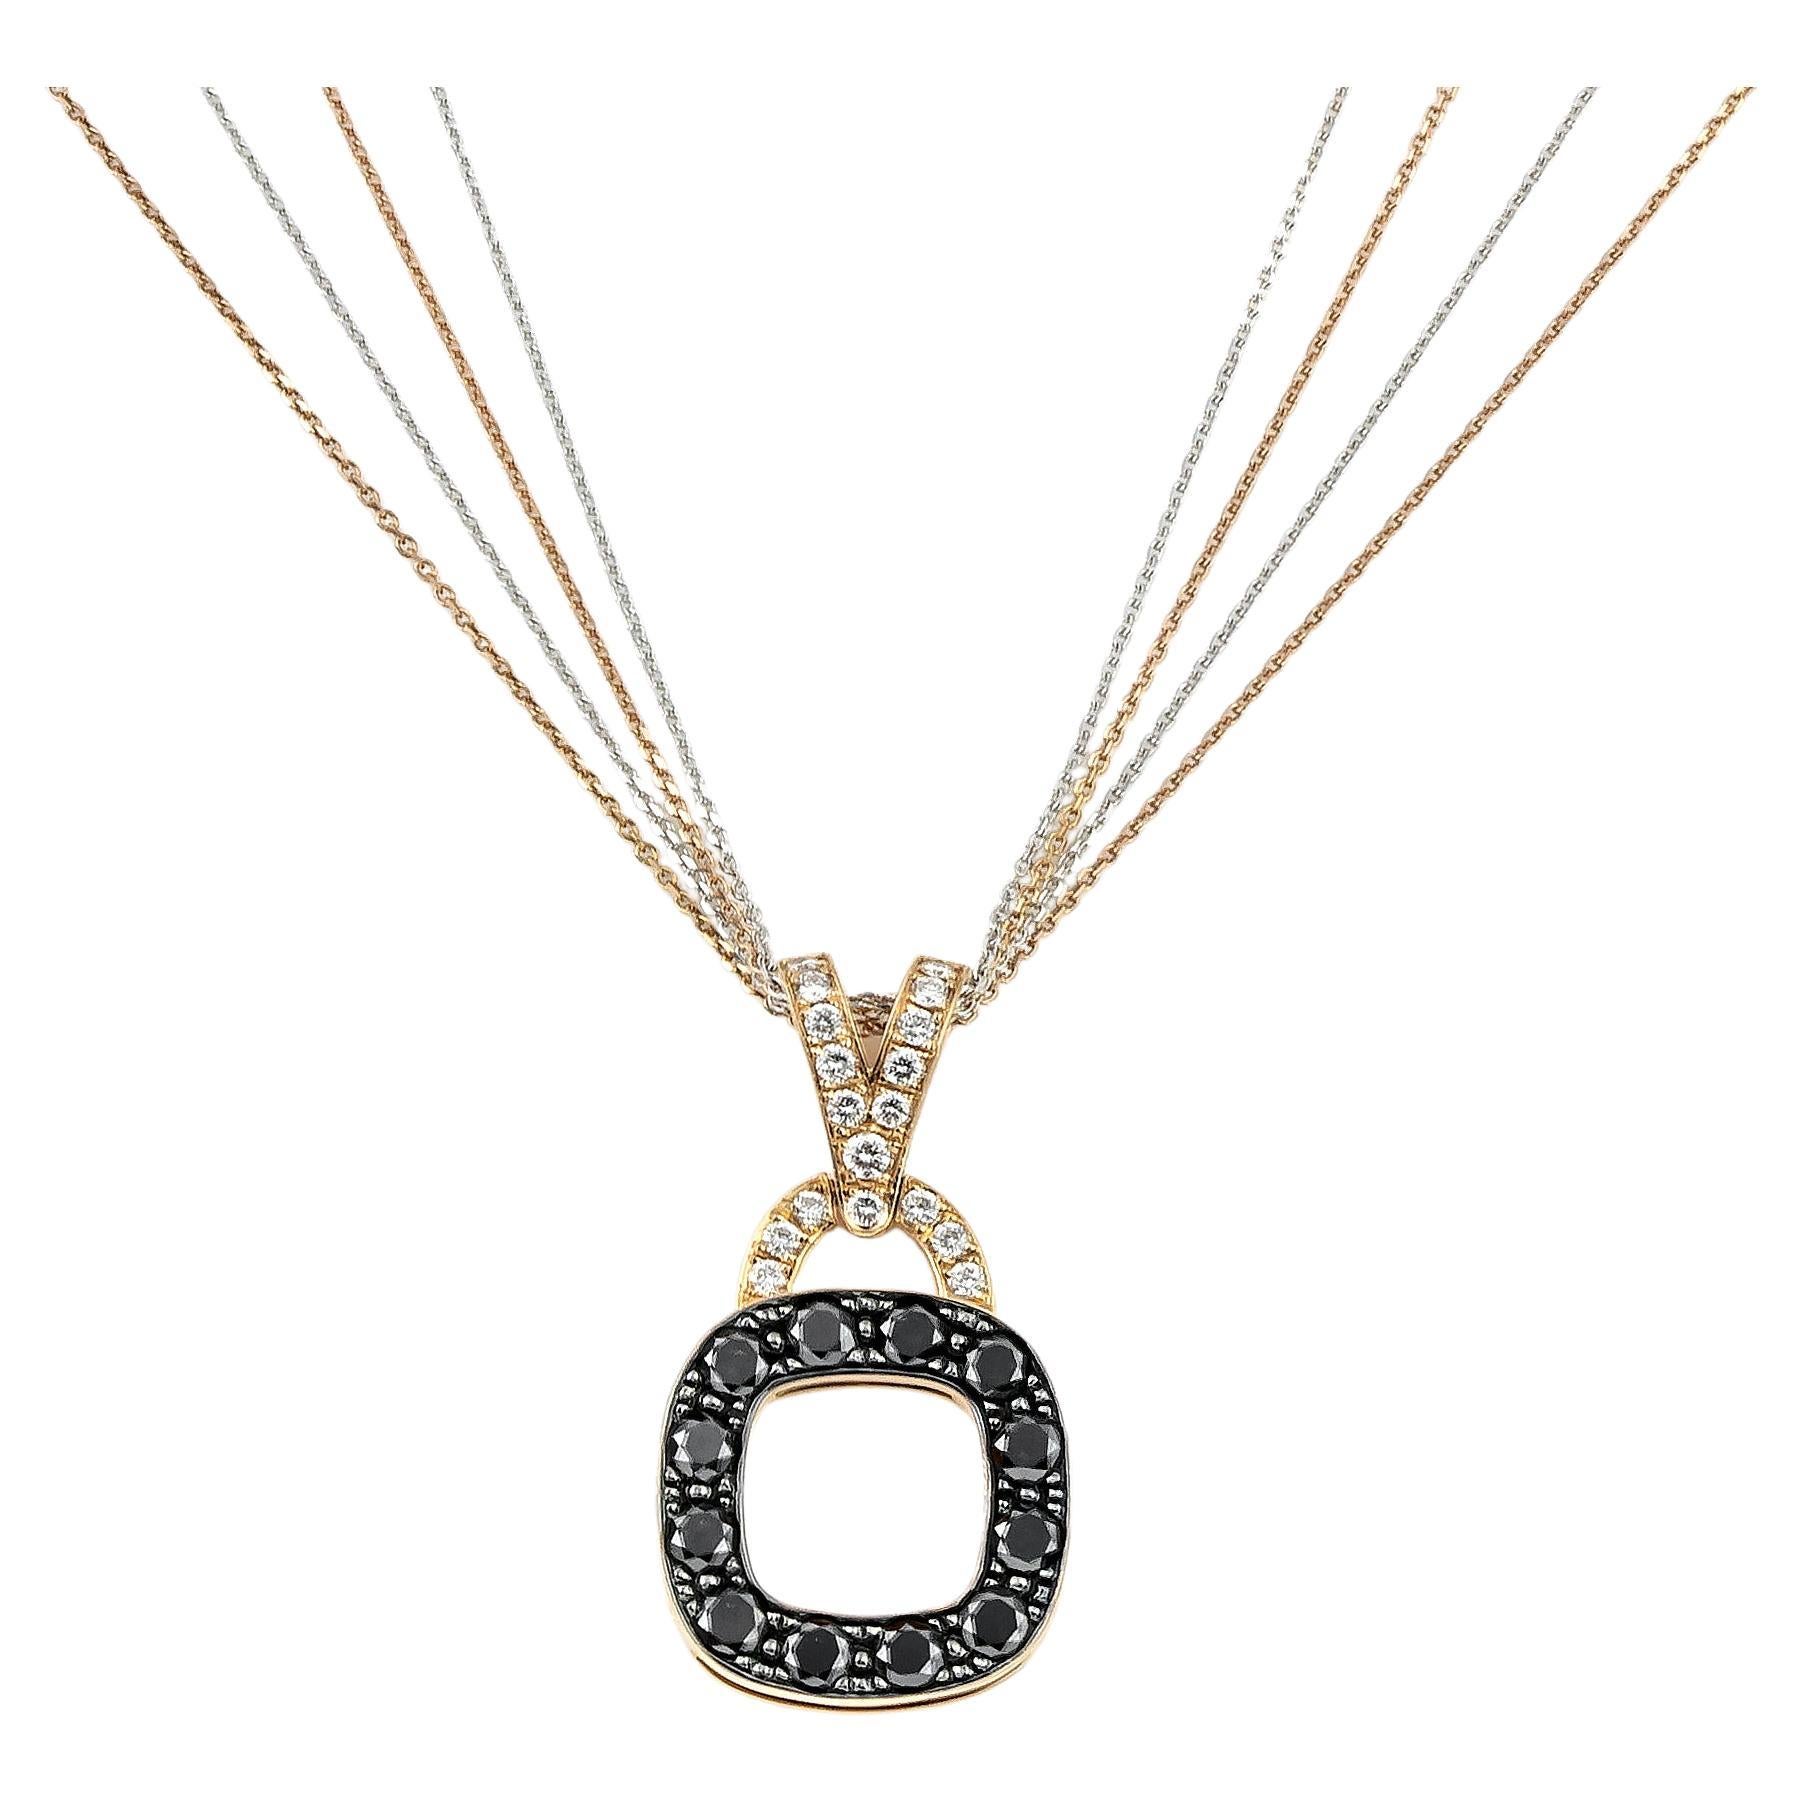 Collier pendentif carré arrondi en or rose 18 carats avec diamants noirs et blancs pavés